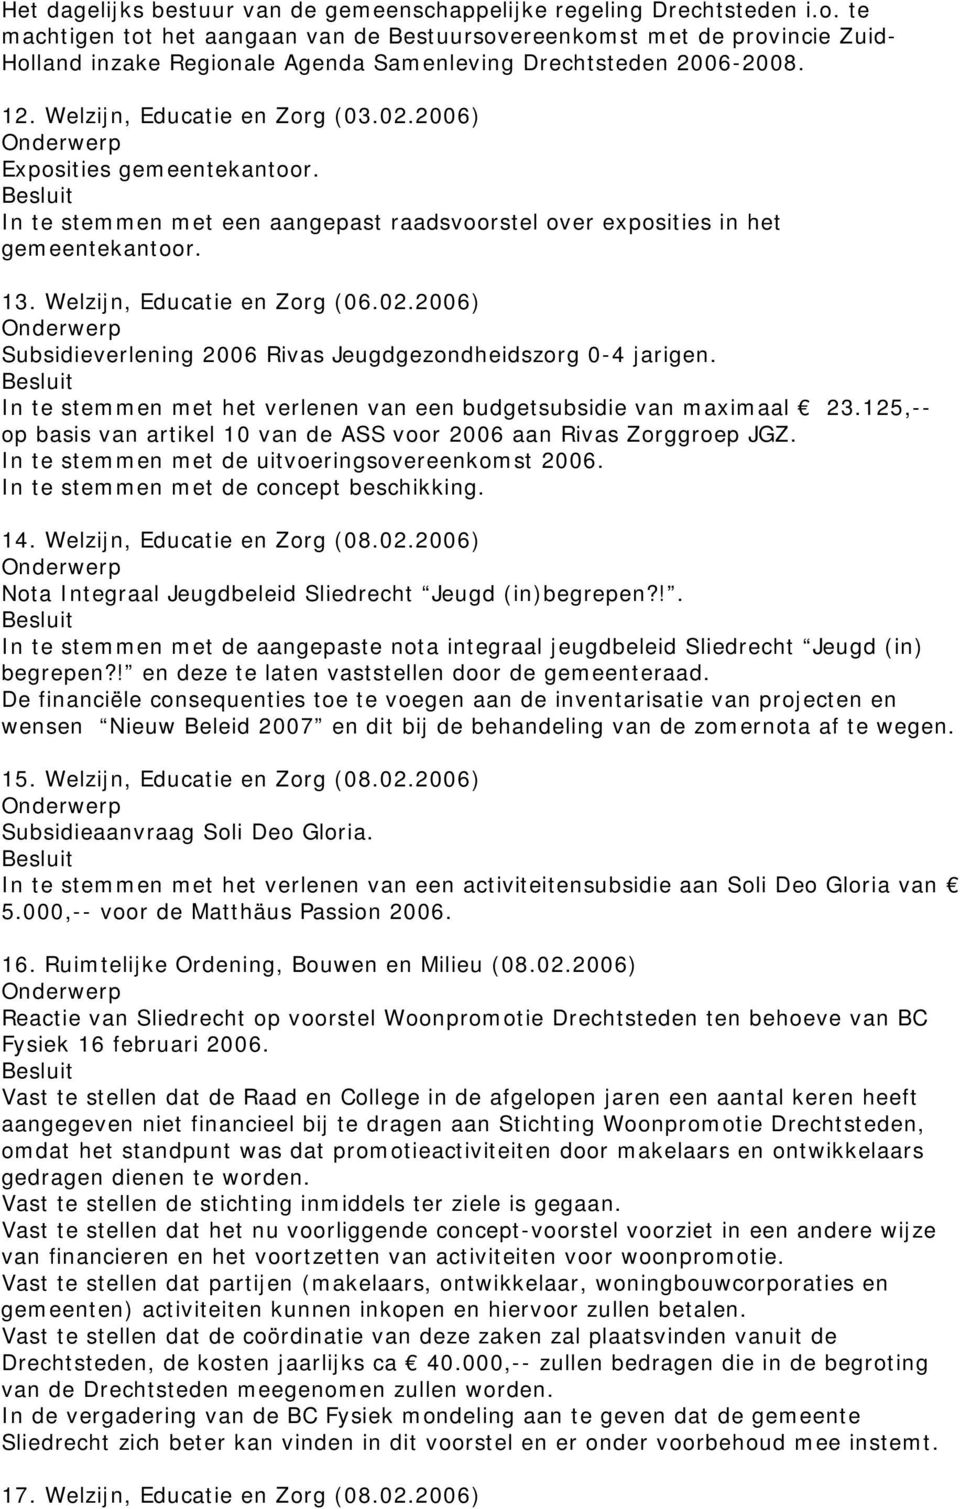 2006) Exposities gemeentekantoor. In te stemmen met een aangepast raadsvoorstel over exposities in het gemeentekantoor. 13. Welzijn, Educatie en Zorg (06.02.